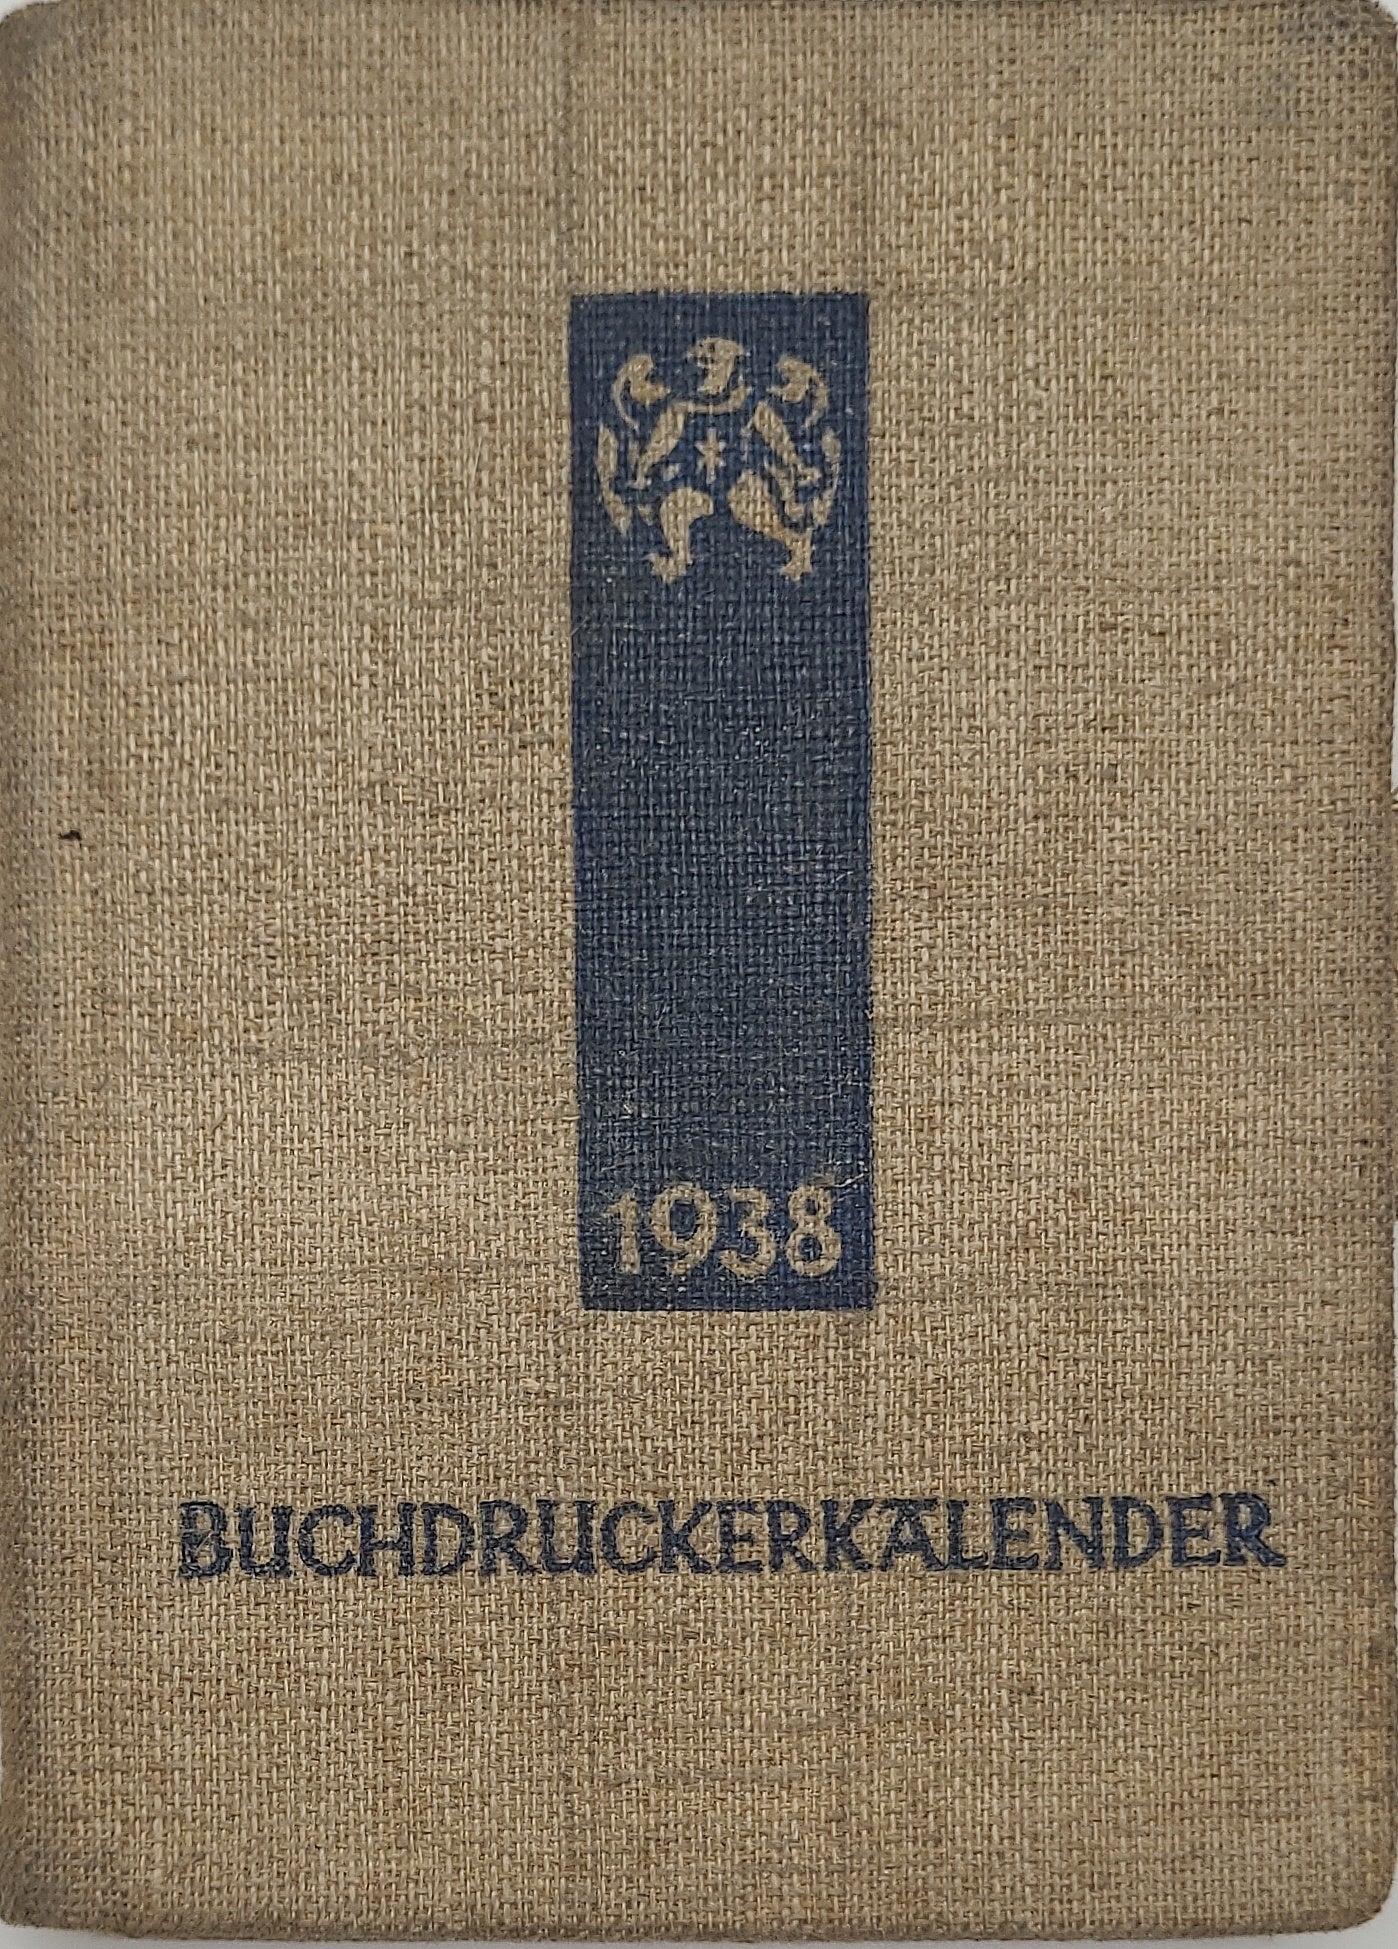 Buchdrucker-Kalender 1938